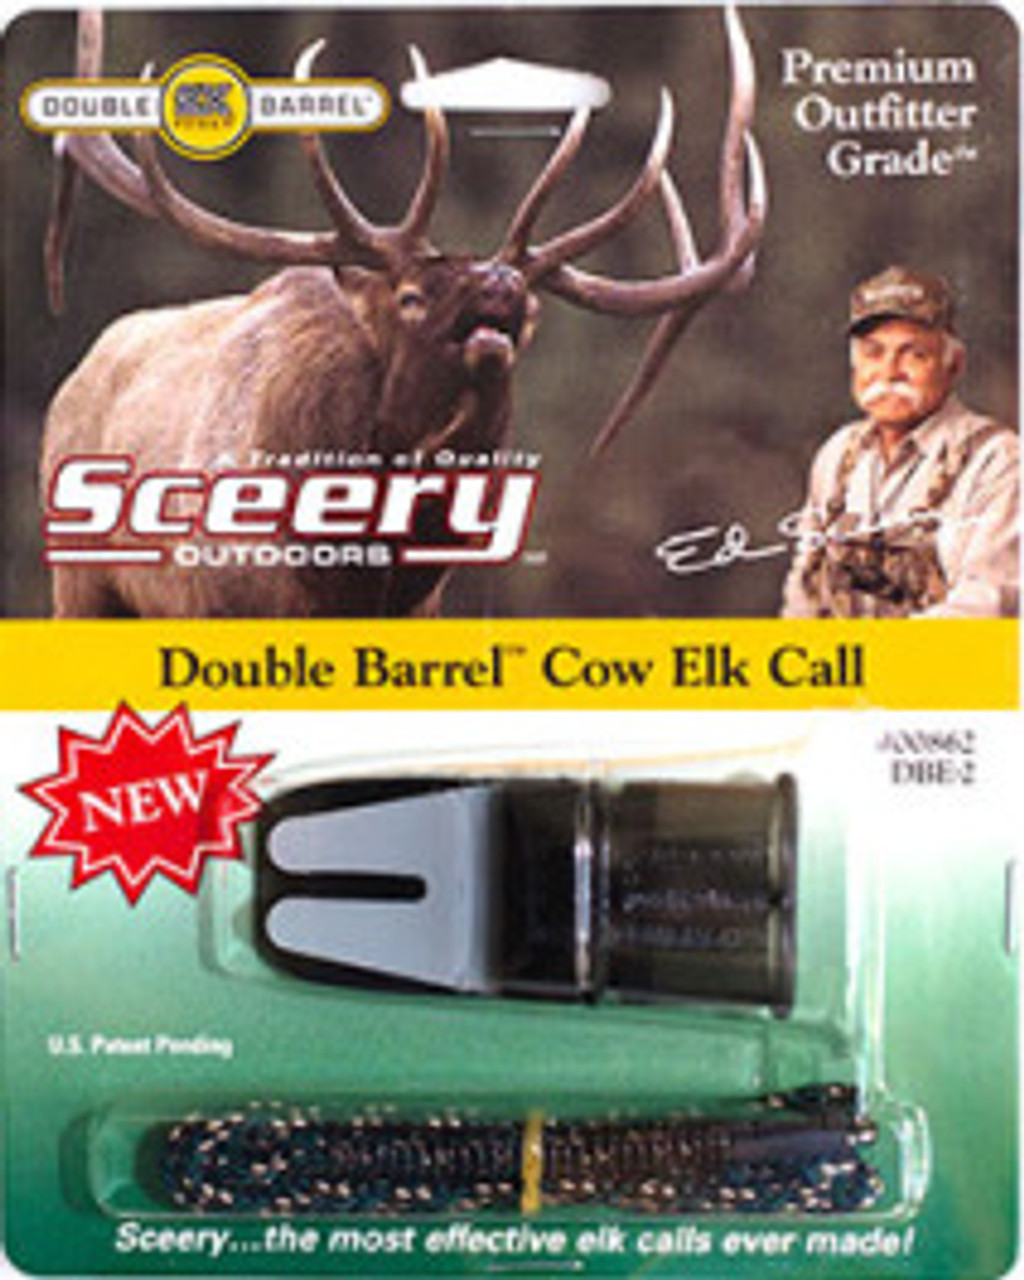 cow elk call download